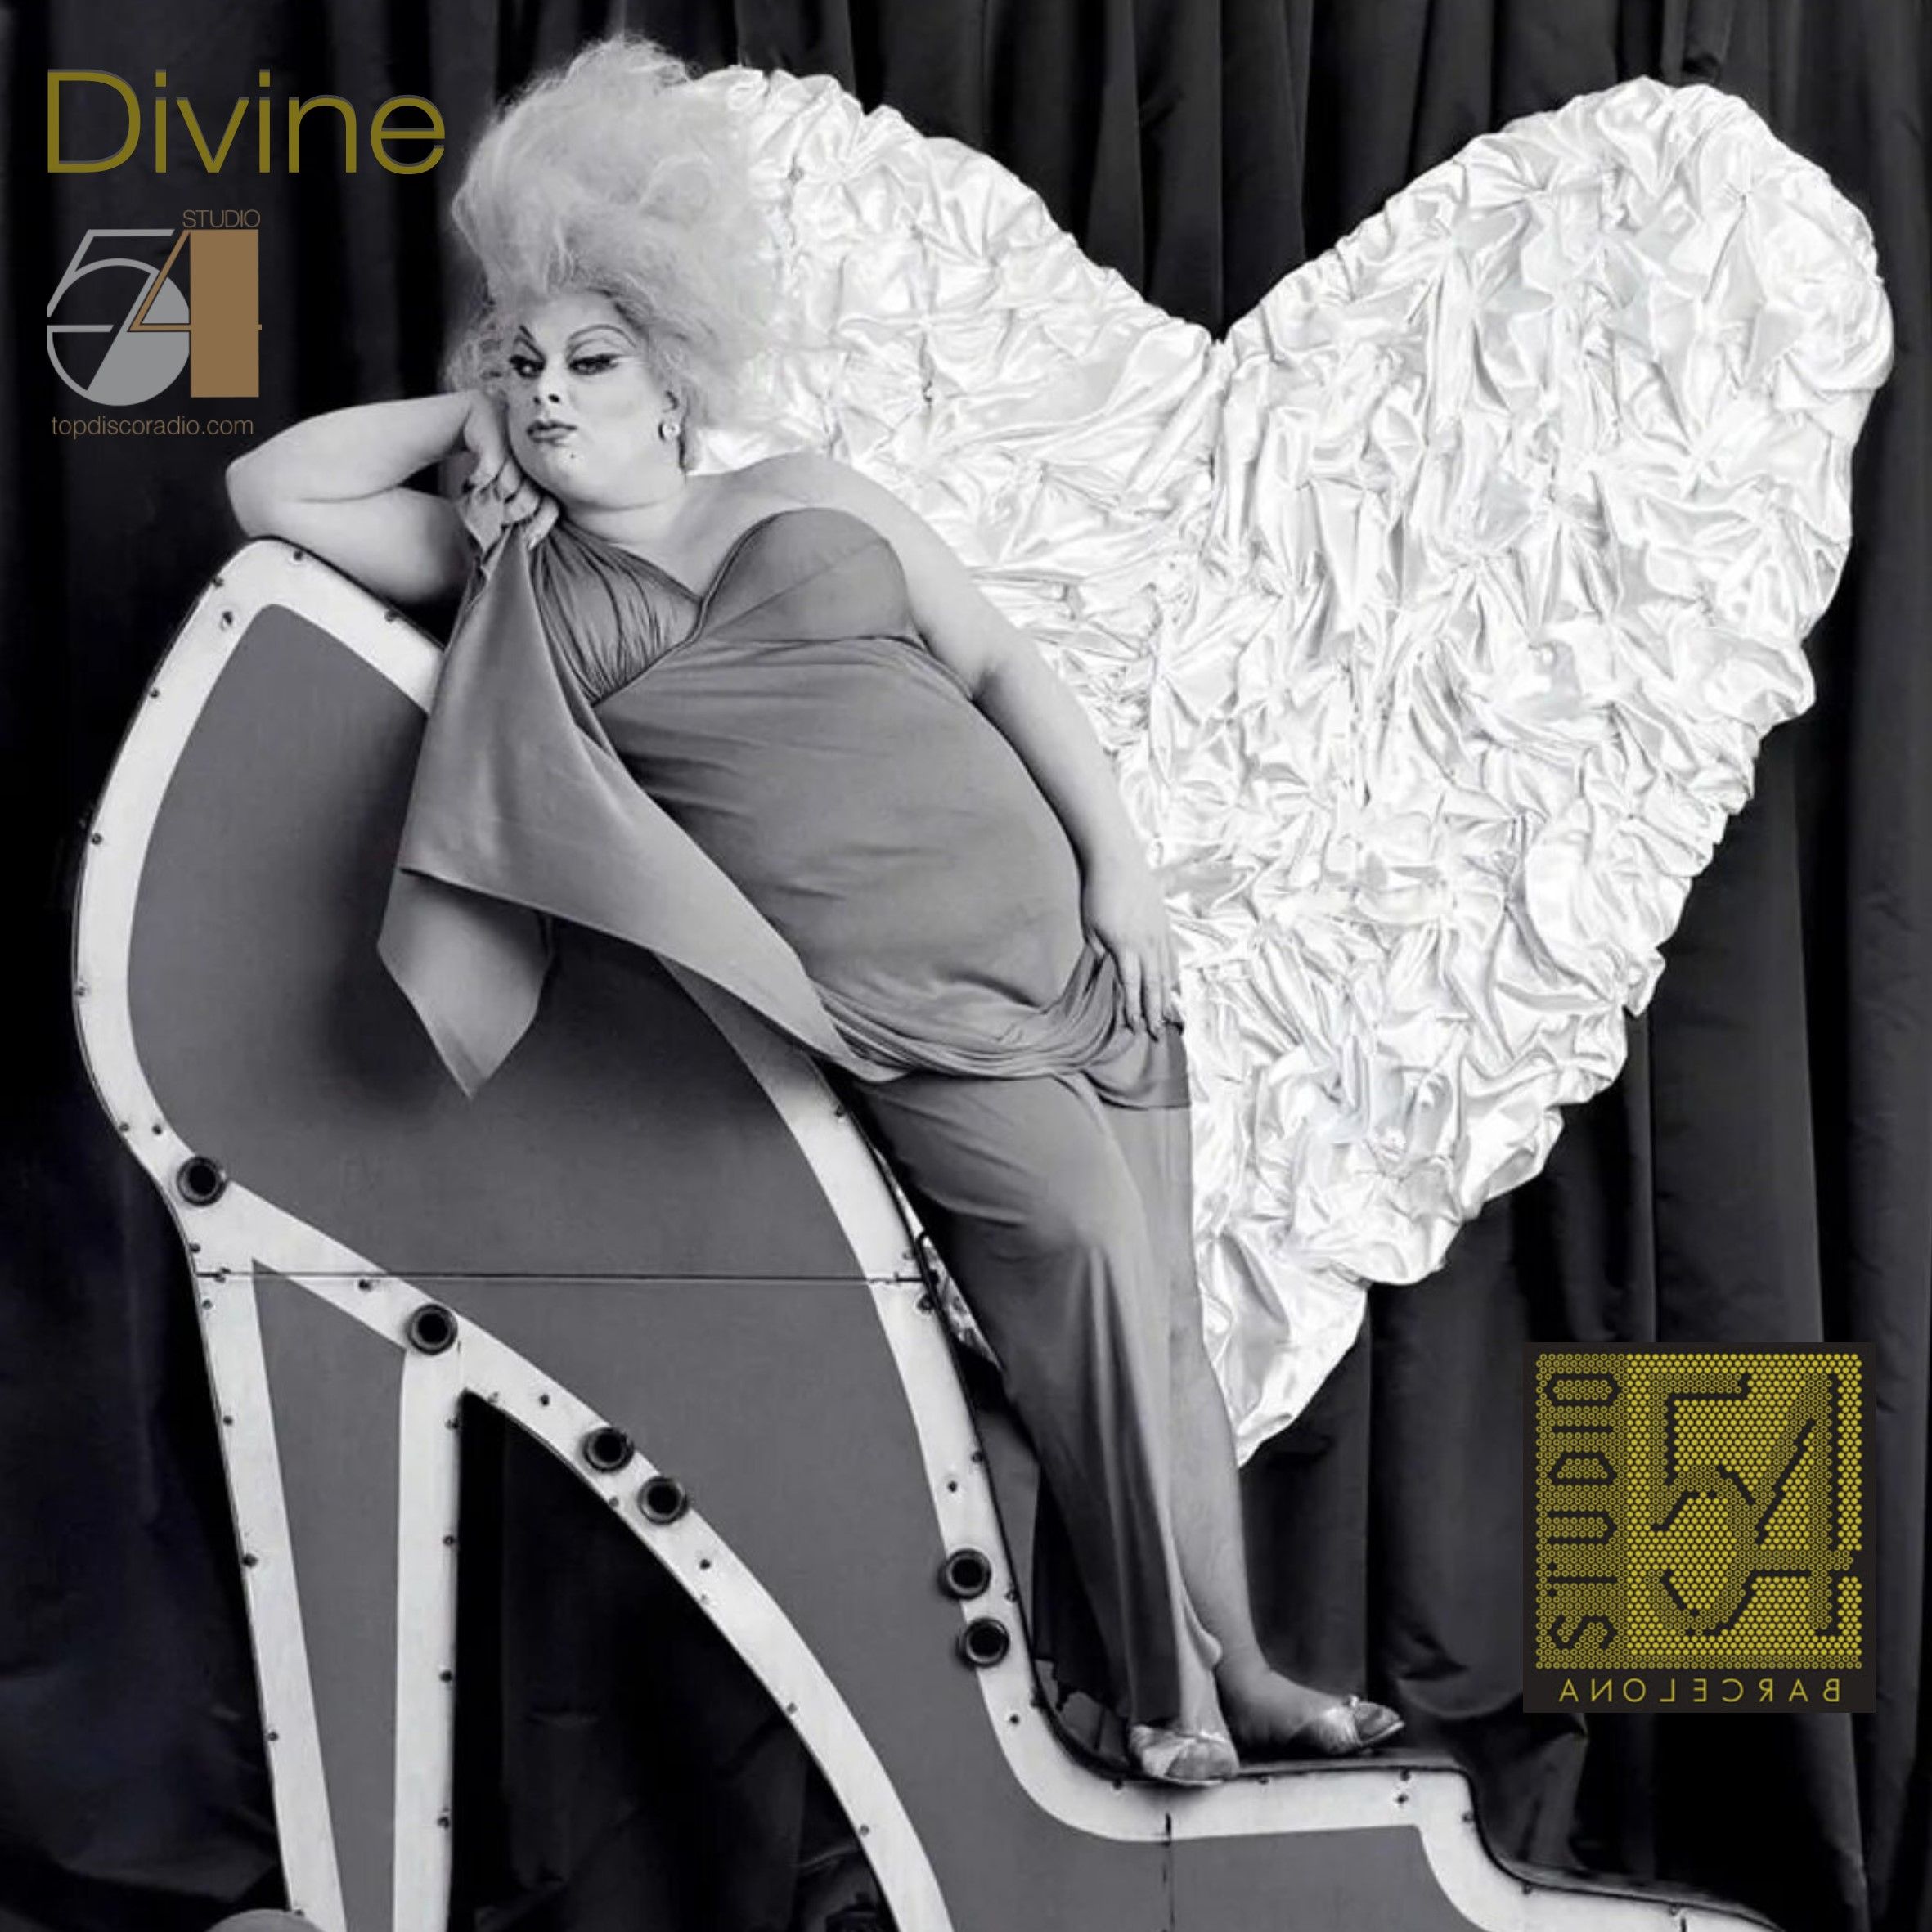 Divine - Studio 54 - Topdisco Radio